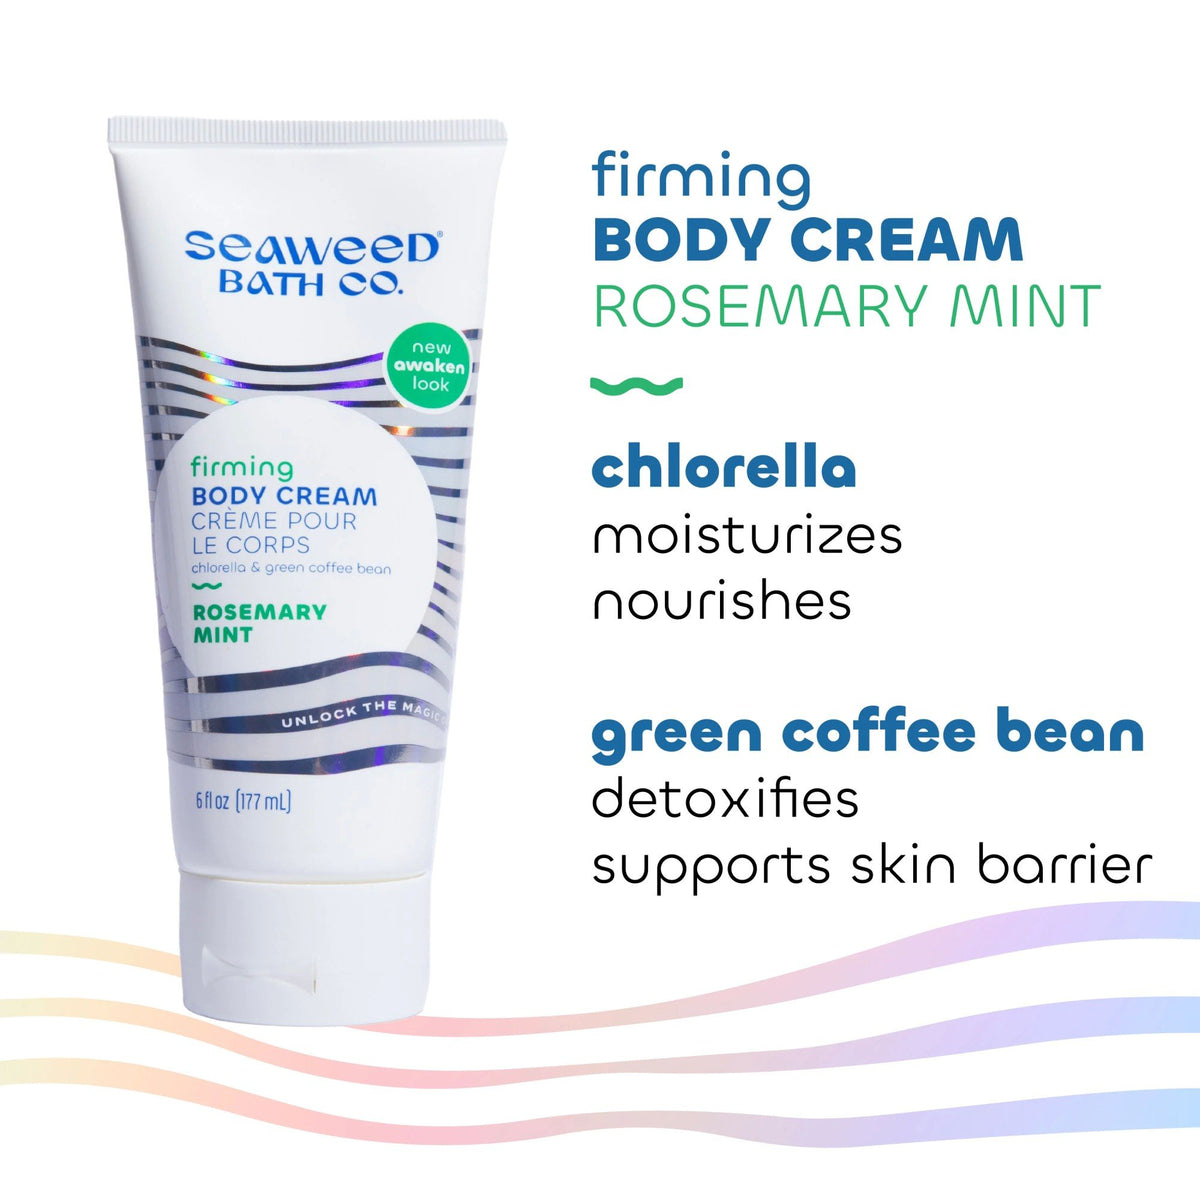 The Seaweed Bath Co. Firming Body Cream Rosemary Mint 6 fl oz Cream